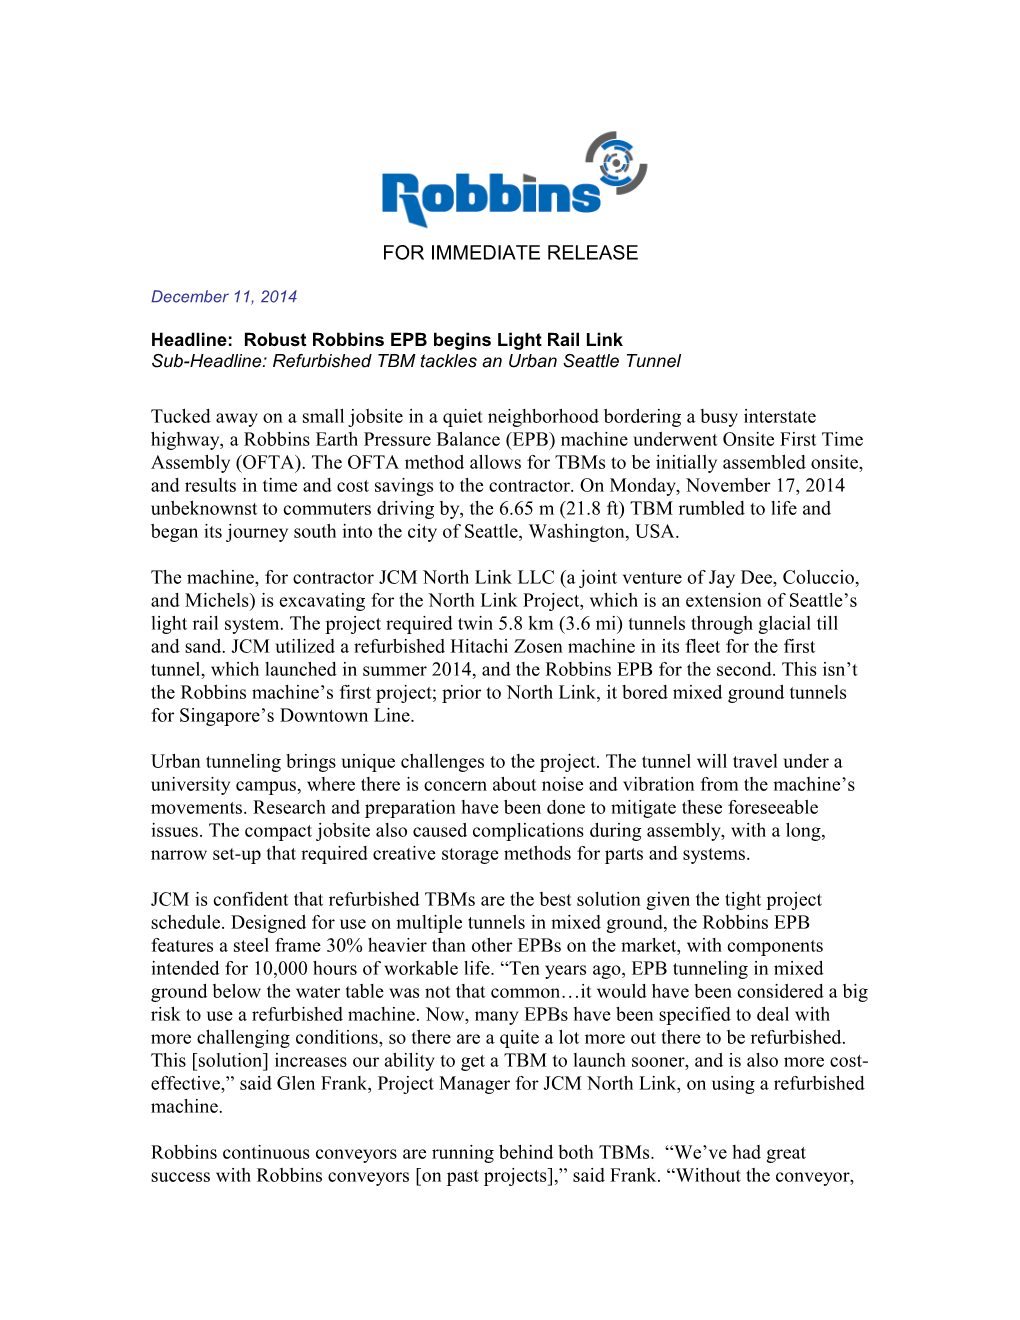 Headline: Robust Robbins EPB Begins Light Rail Link